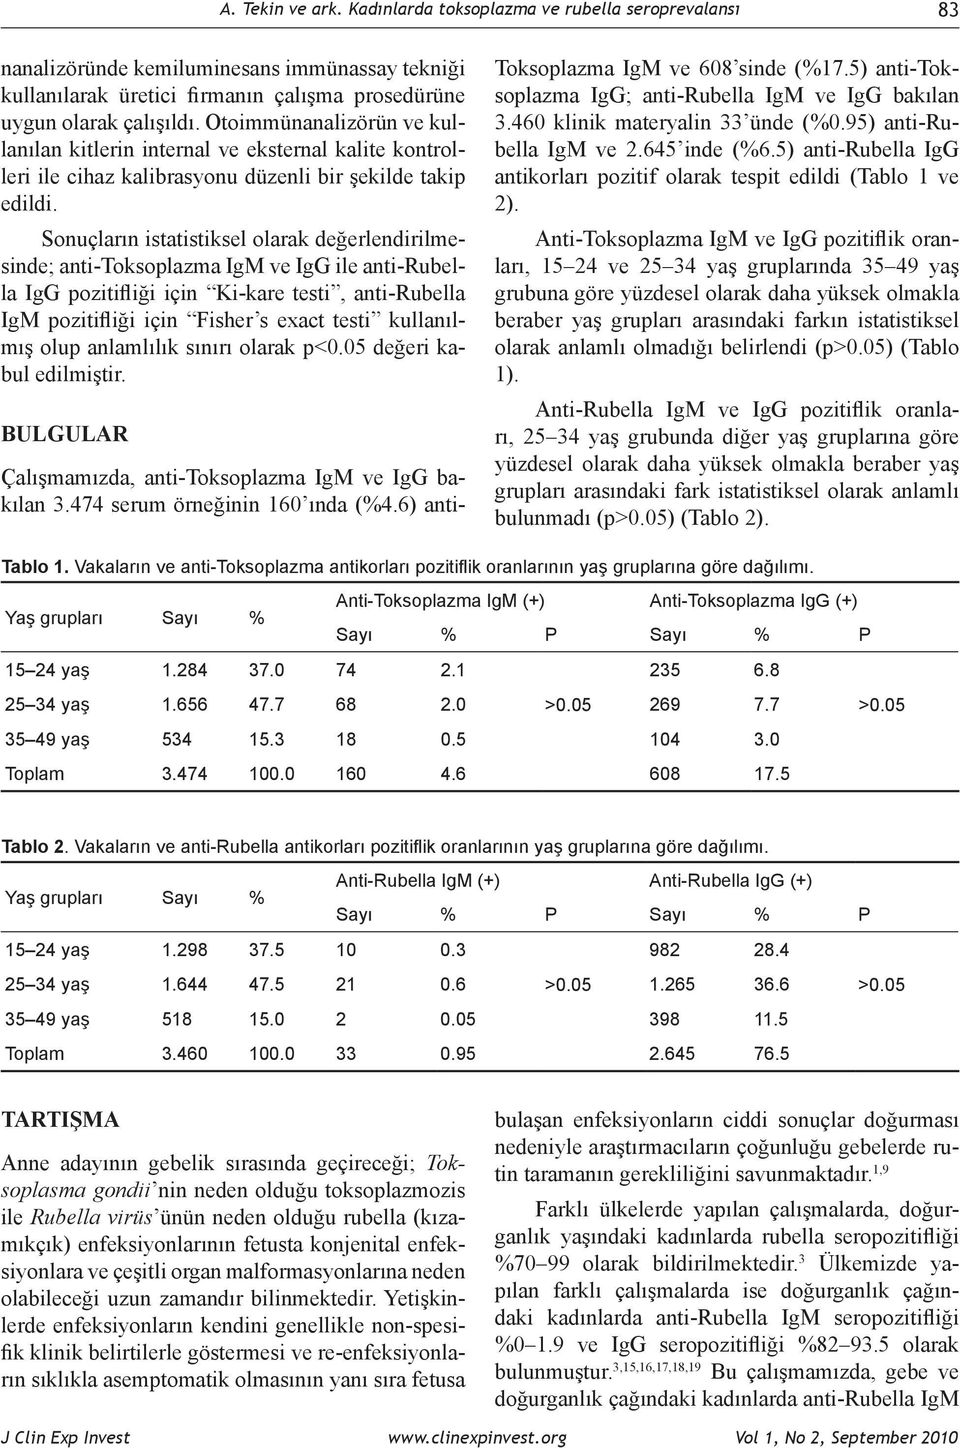 Sonuçların istatistiksel olarak değerlendirilmesinde; anti-toksoplazma IgM ve IgG ile anti-rubella IgG pozitifliği için Ki-kare testi, anti-rubella IgM pozitifliği için Fisher s exact testi